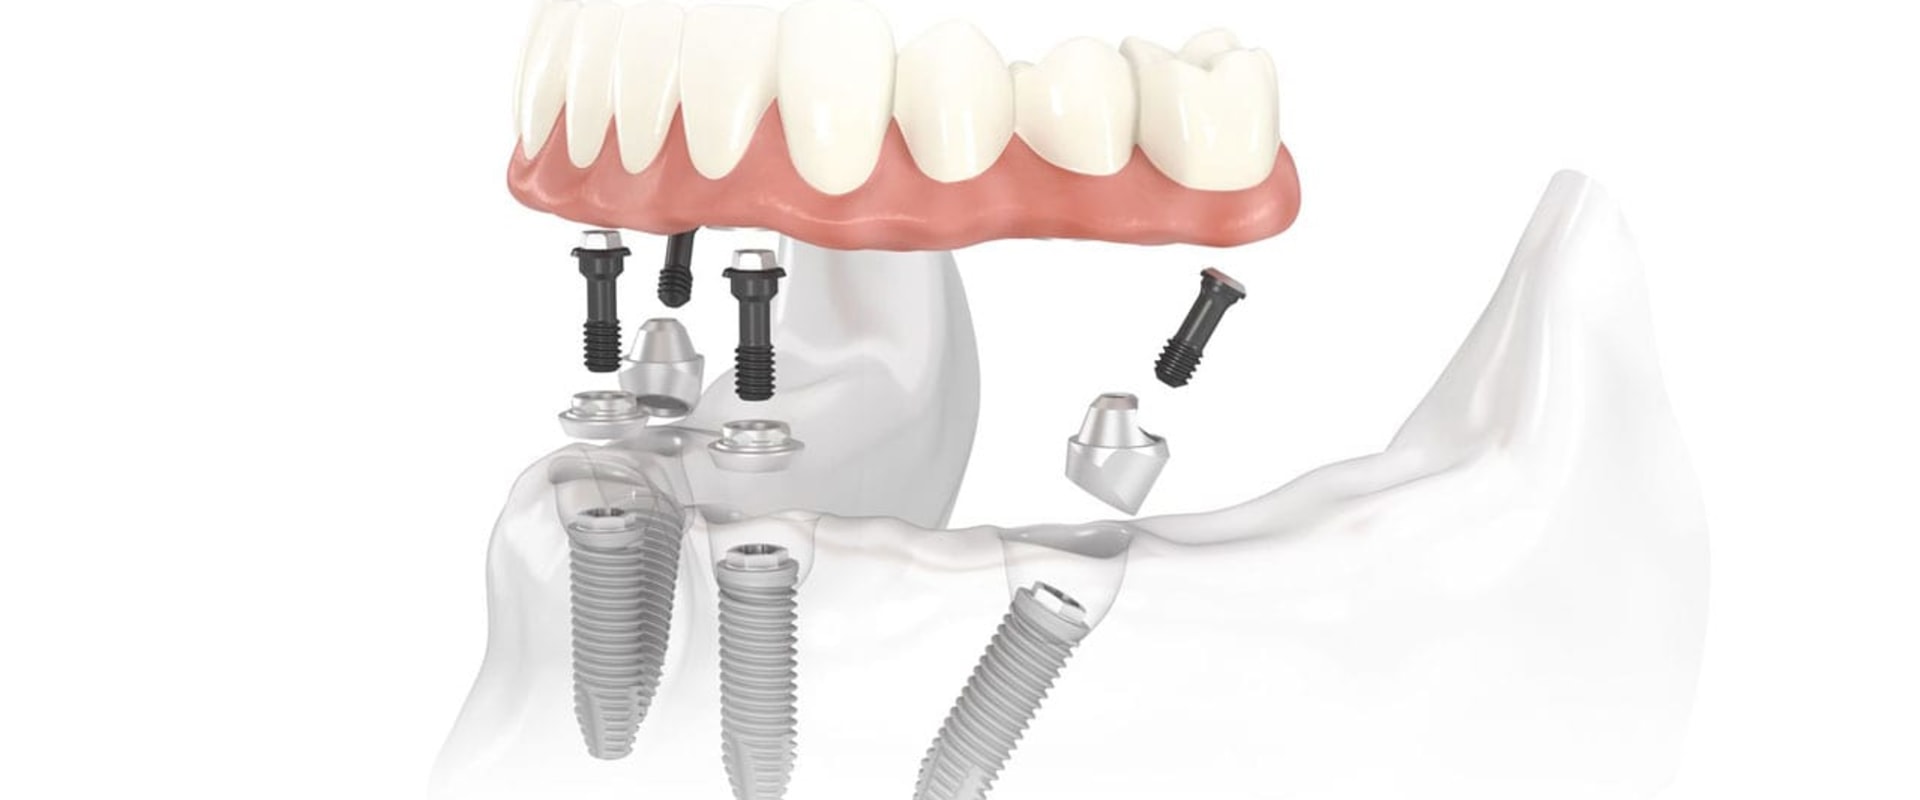 How Long Do All-on-Four Dental Implants Last?